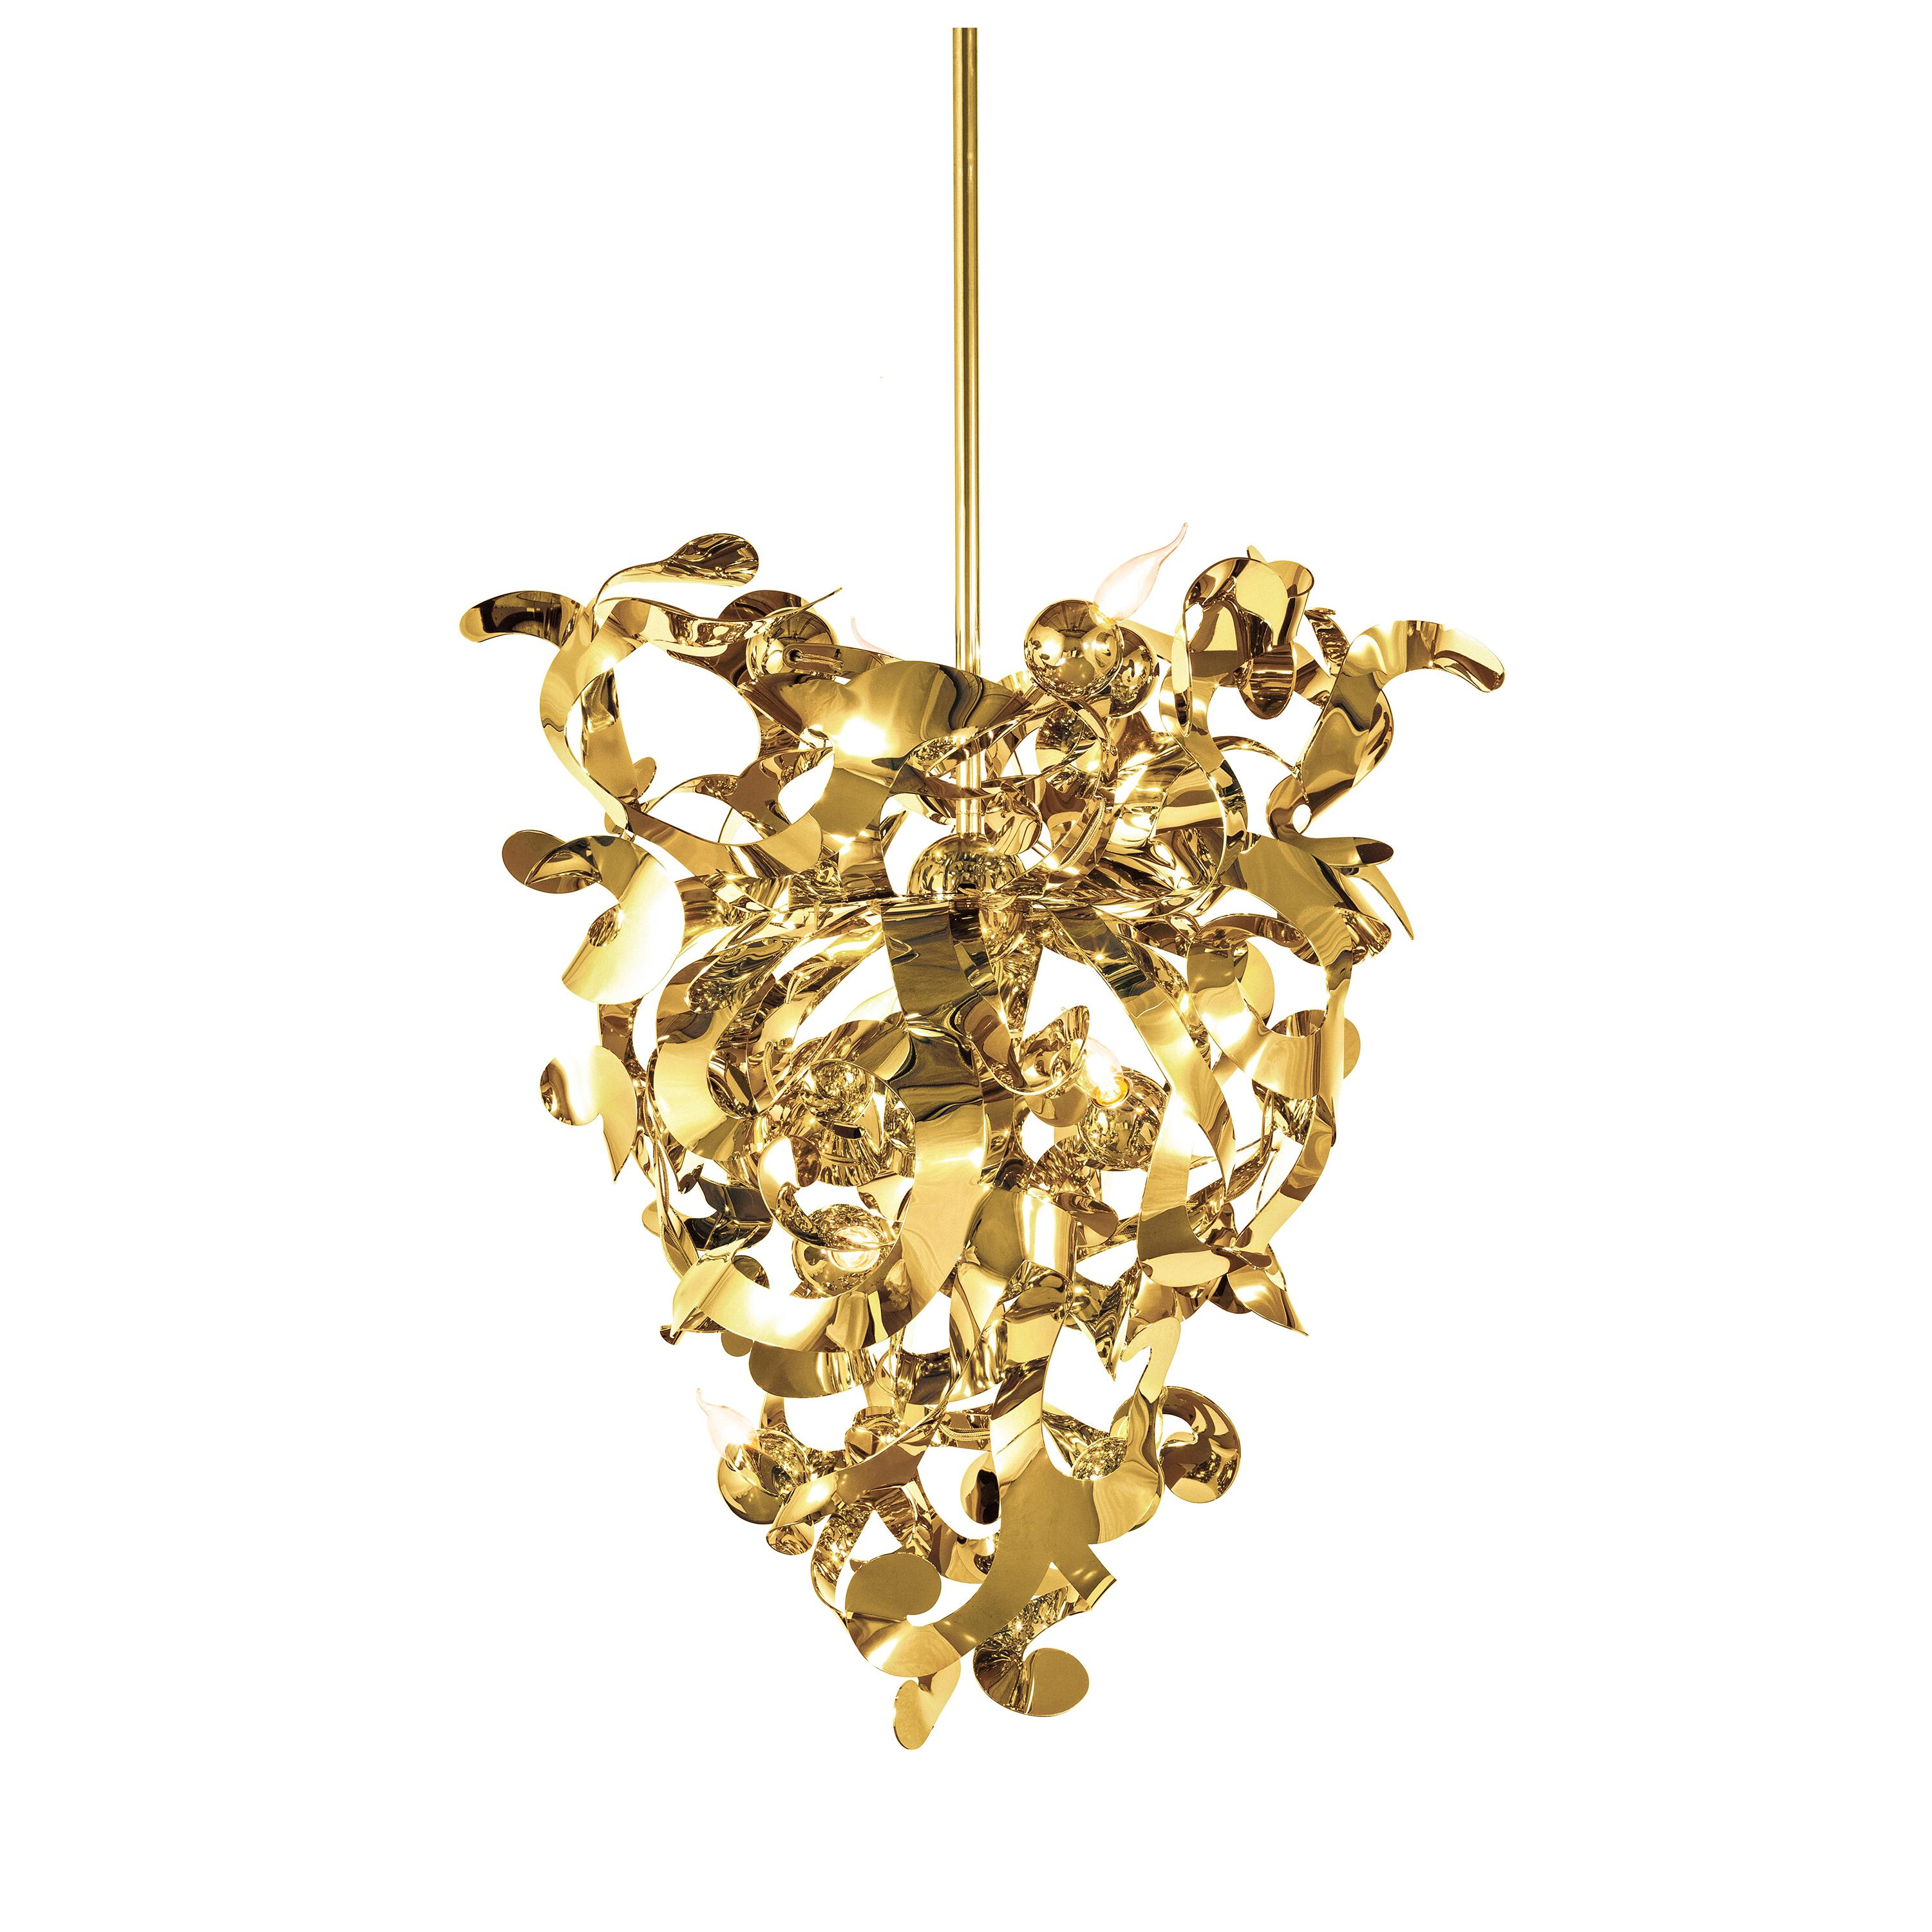 Modern Chandelier in a Brass Finish, Kelp Collection, by Brand van Egmond